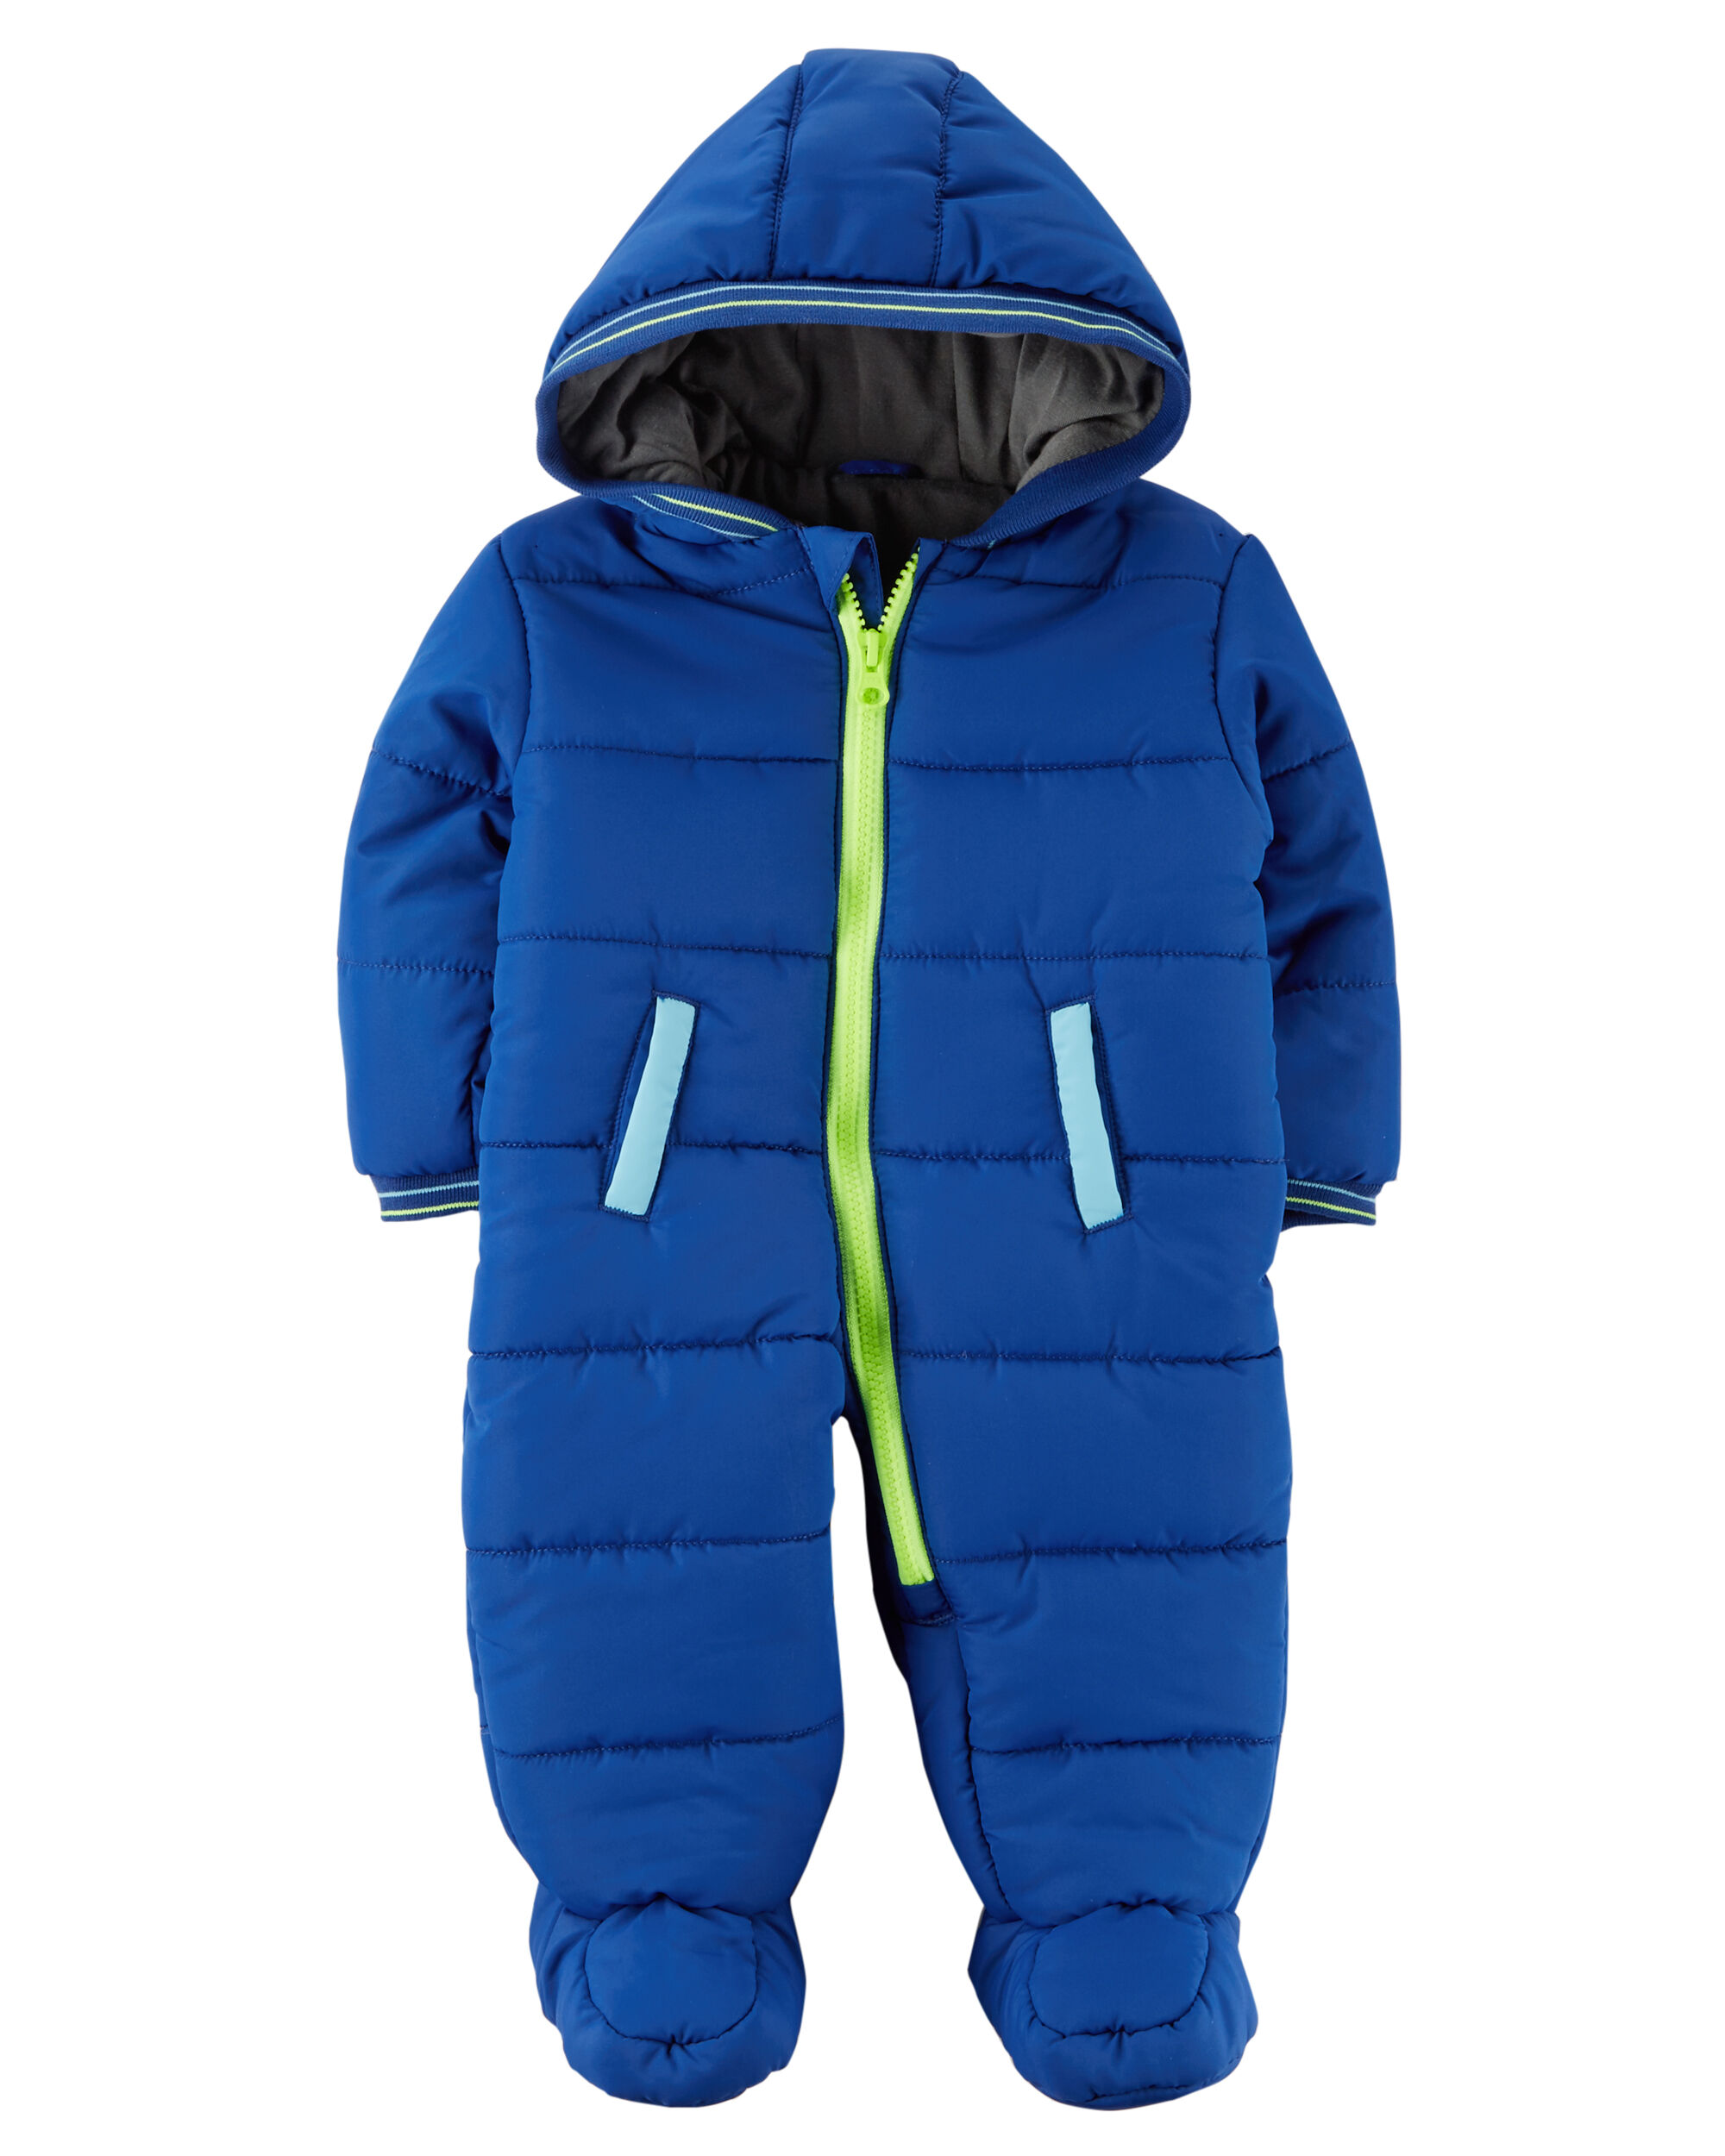 Infant 1-Piece Snowsuit | carters.com